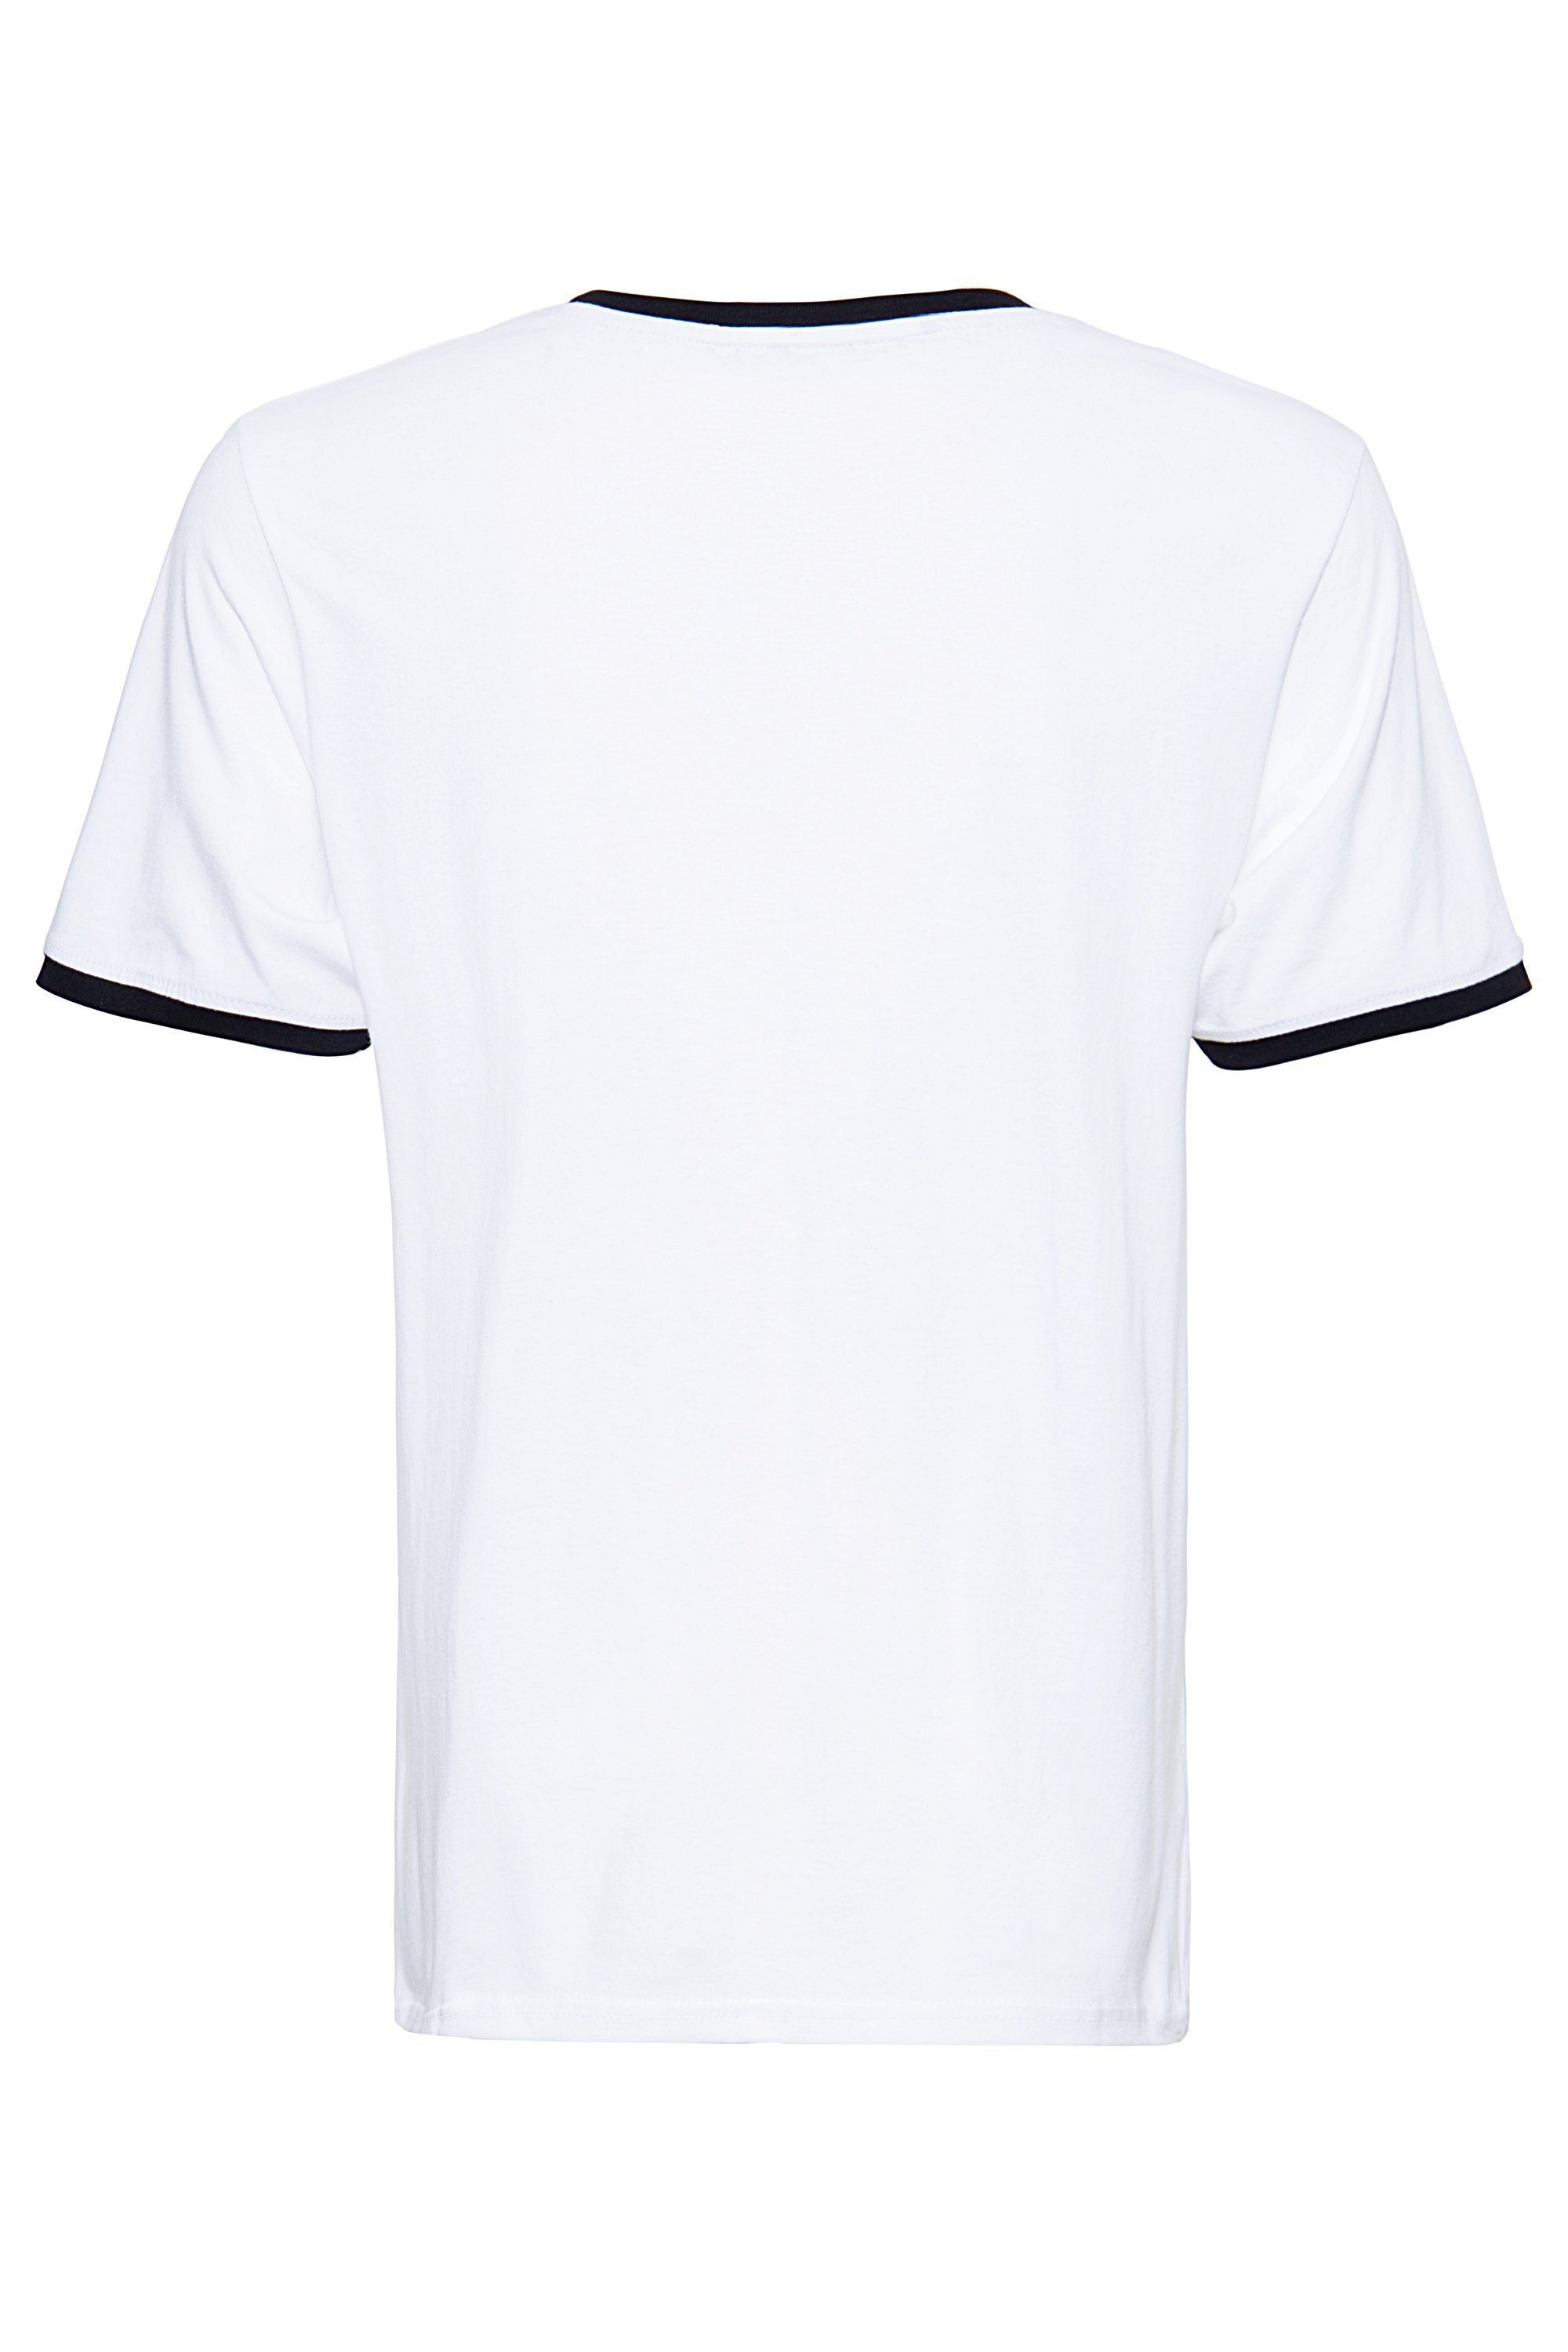 Speedfreak Ringer-Optik T-Shirt KingKerosin in angesagter